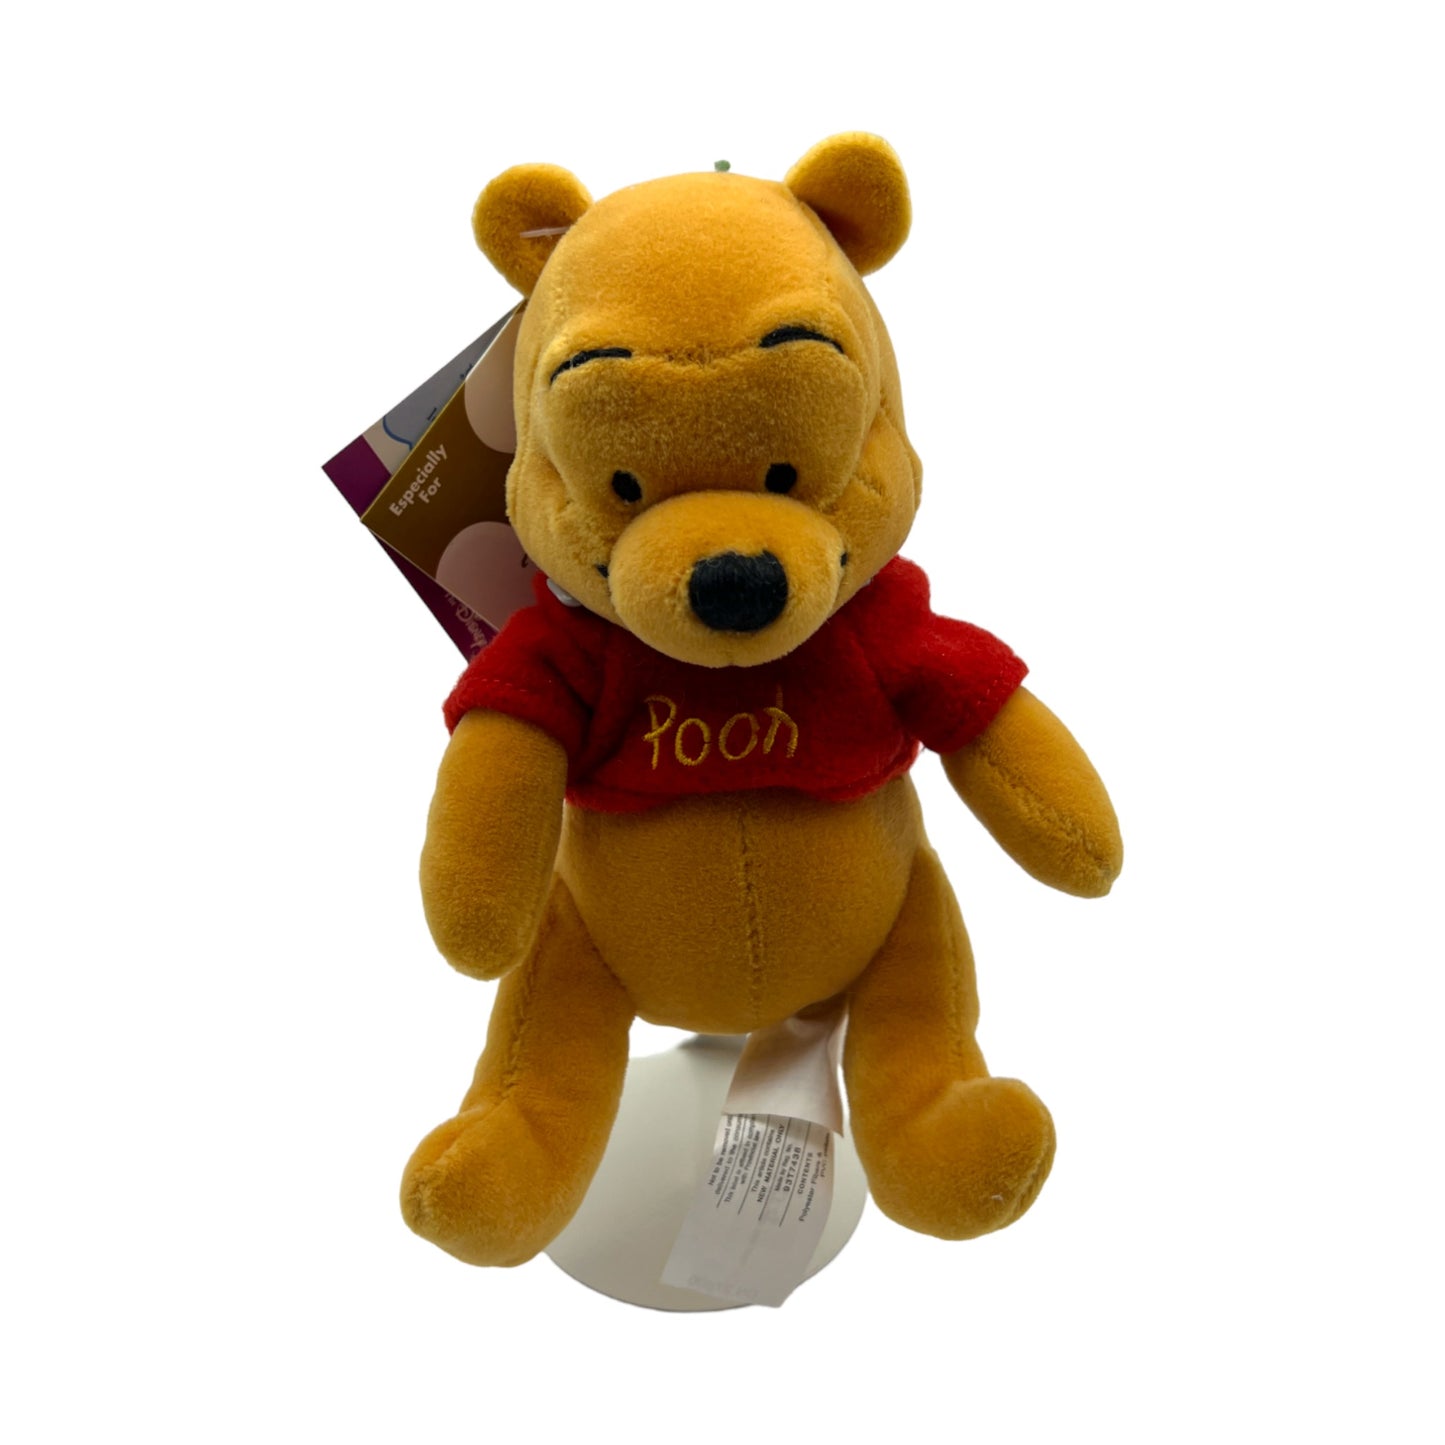 Disney Store - Pooh W/Sound Mini Bean Bag - With Tag - 8"